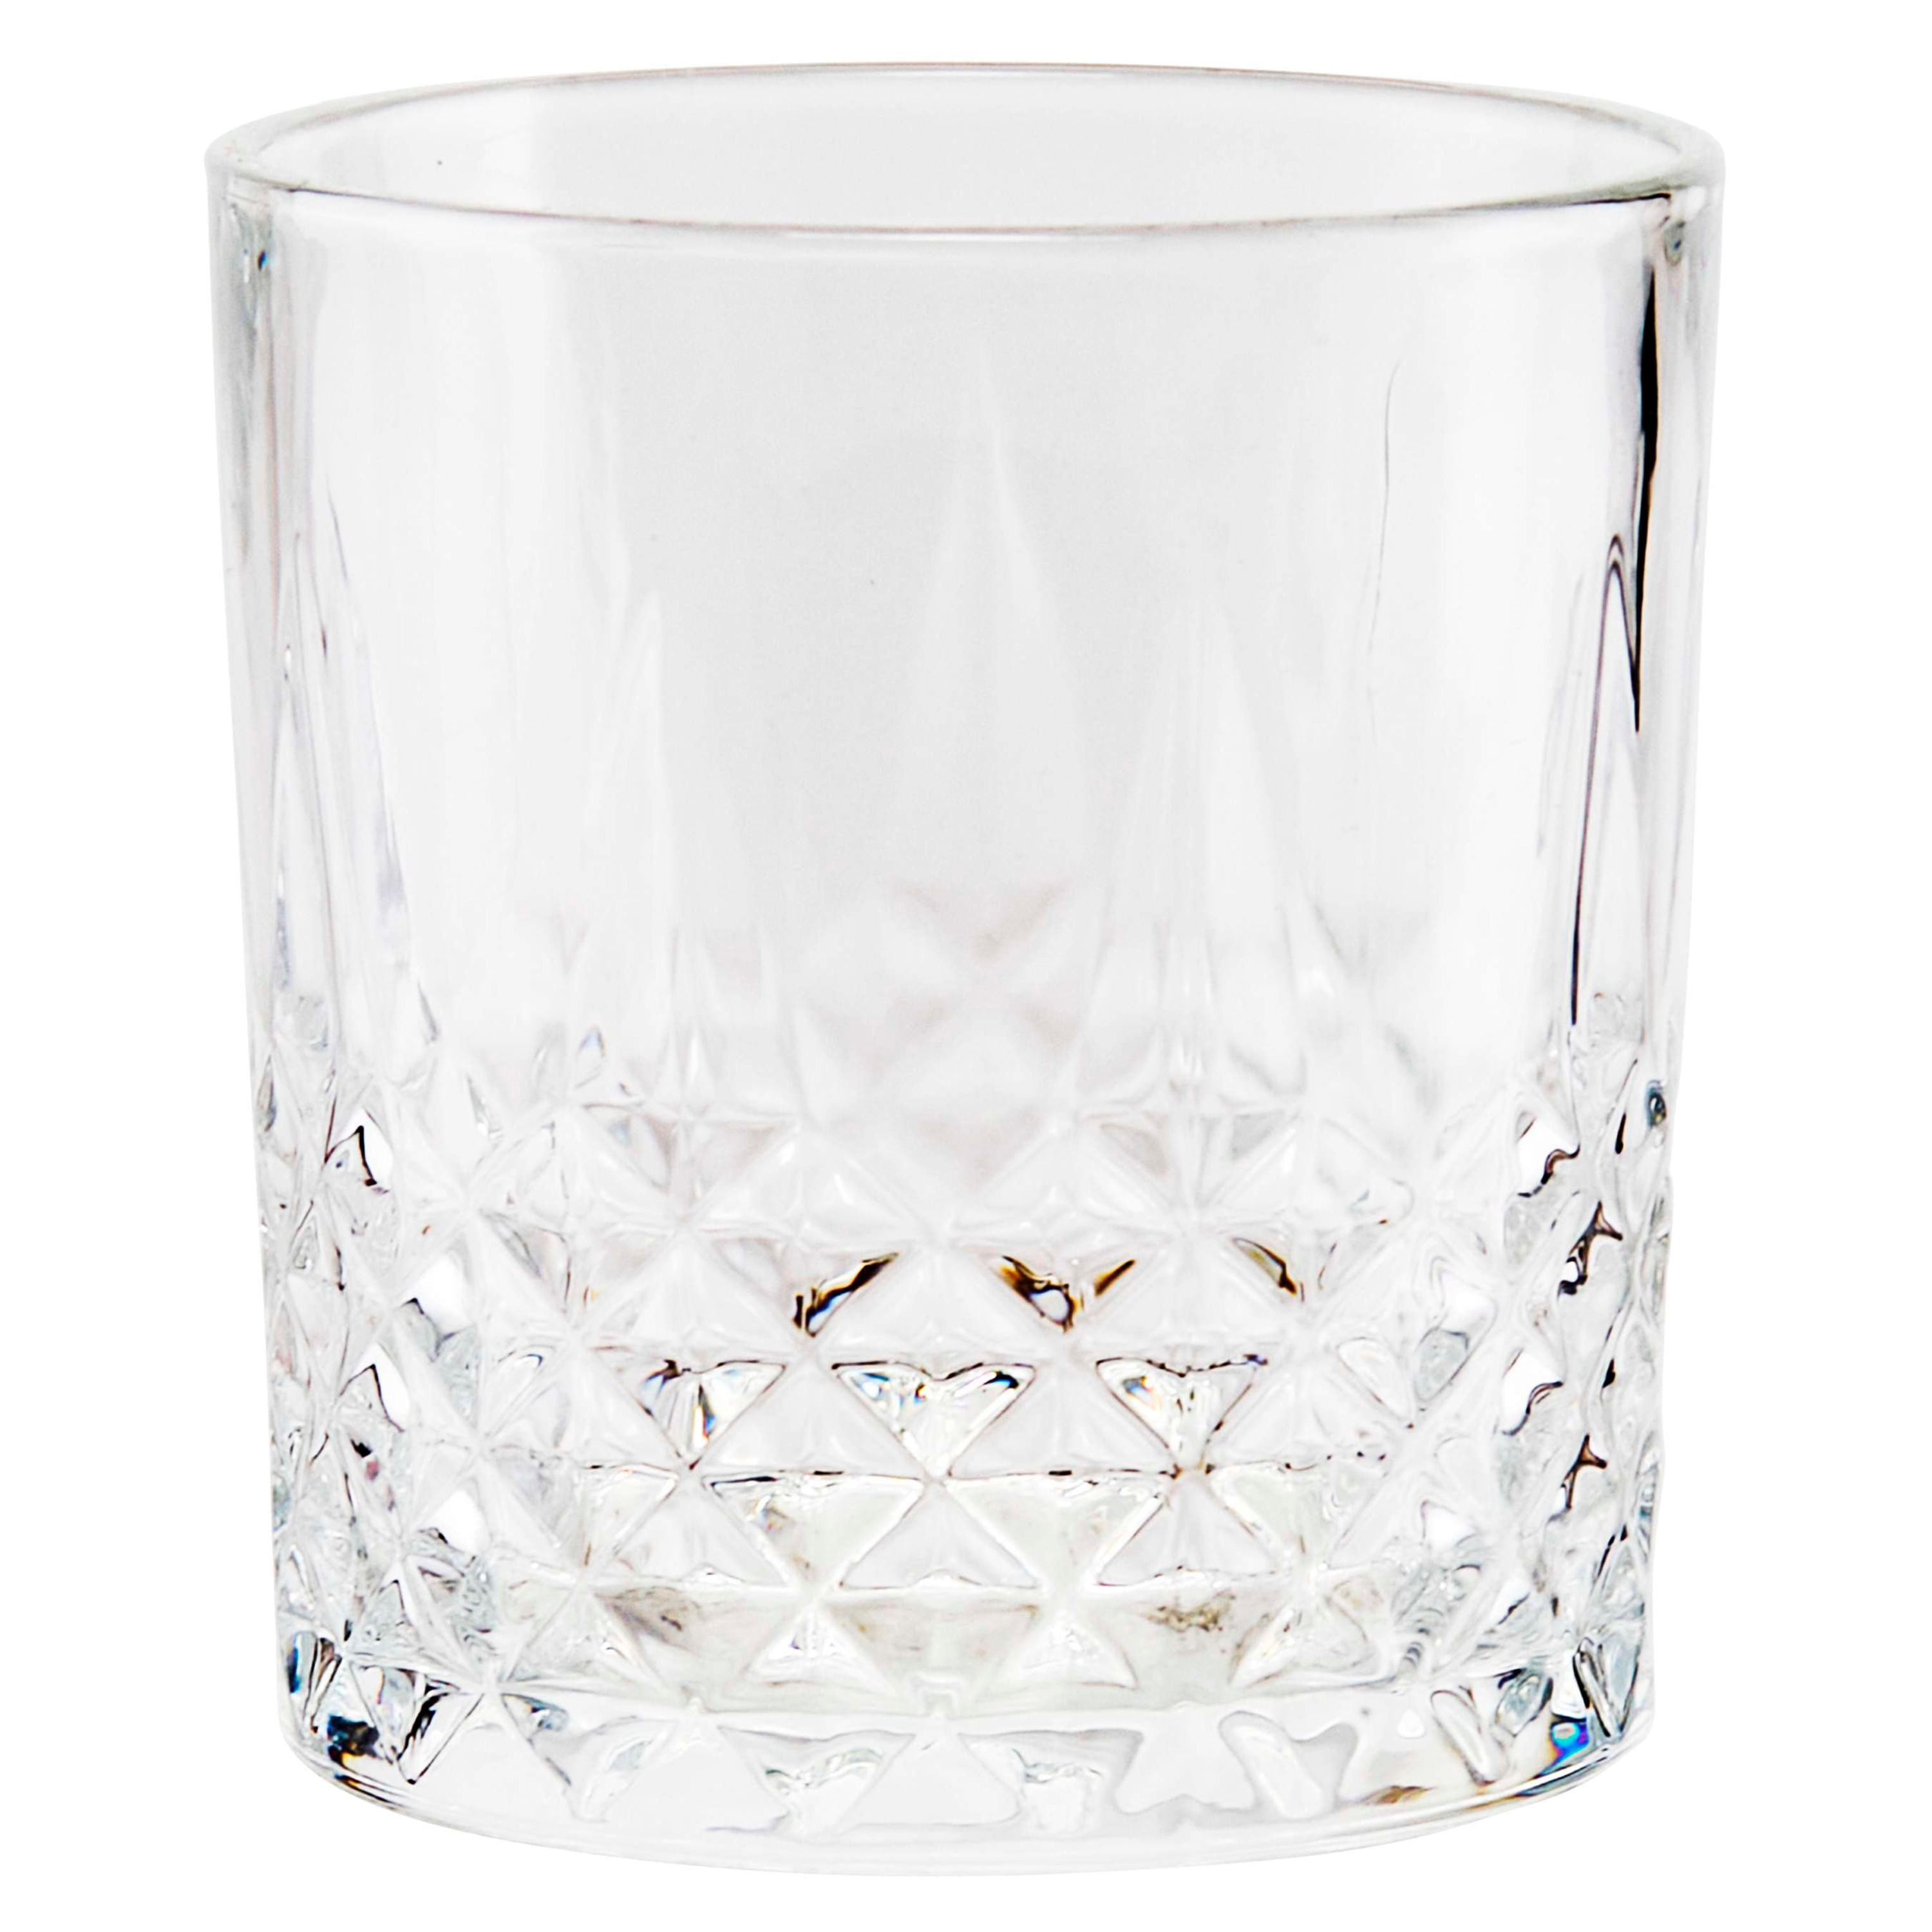  abrwyy Juego de 4 vasos de vidrio vintage, vasos de vidrio  resistentes de 10 onzas, juego de cristalería de colores, juego de vasos en  relieve para fiestas, bodas, hogar, oficina, regalo 